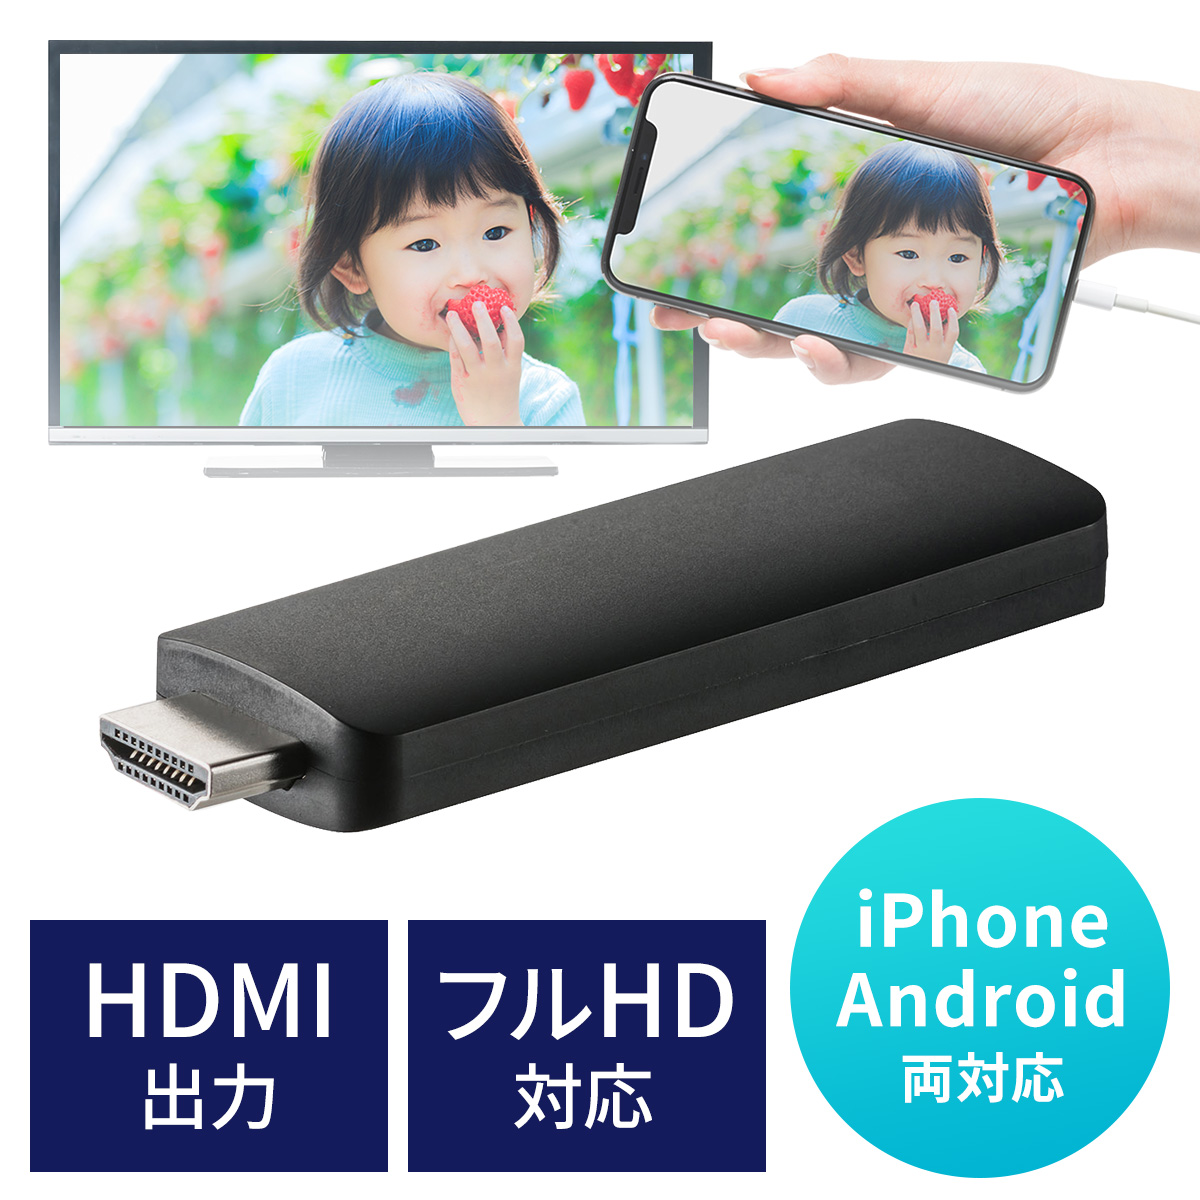 IPhone HDMI 変換アダプタ 1080P 給電不要最新のiOS対応